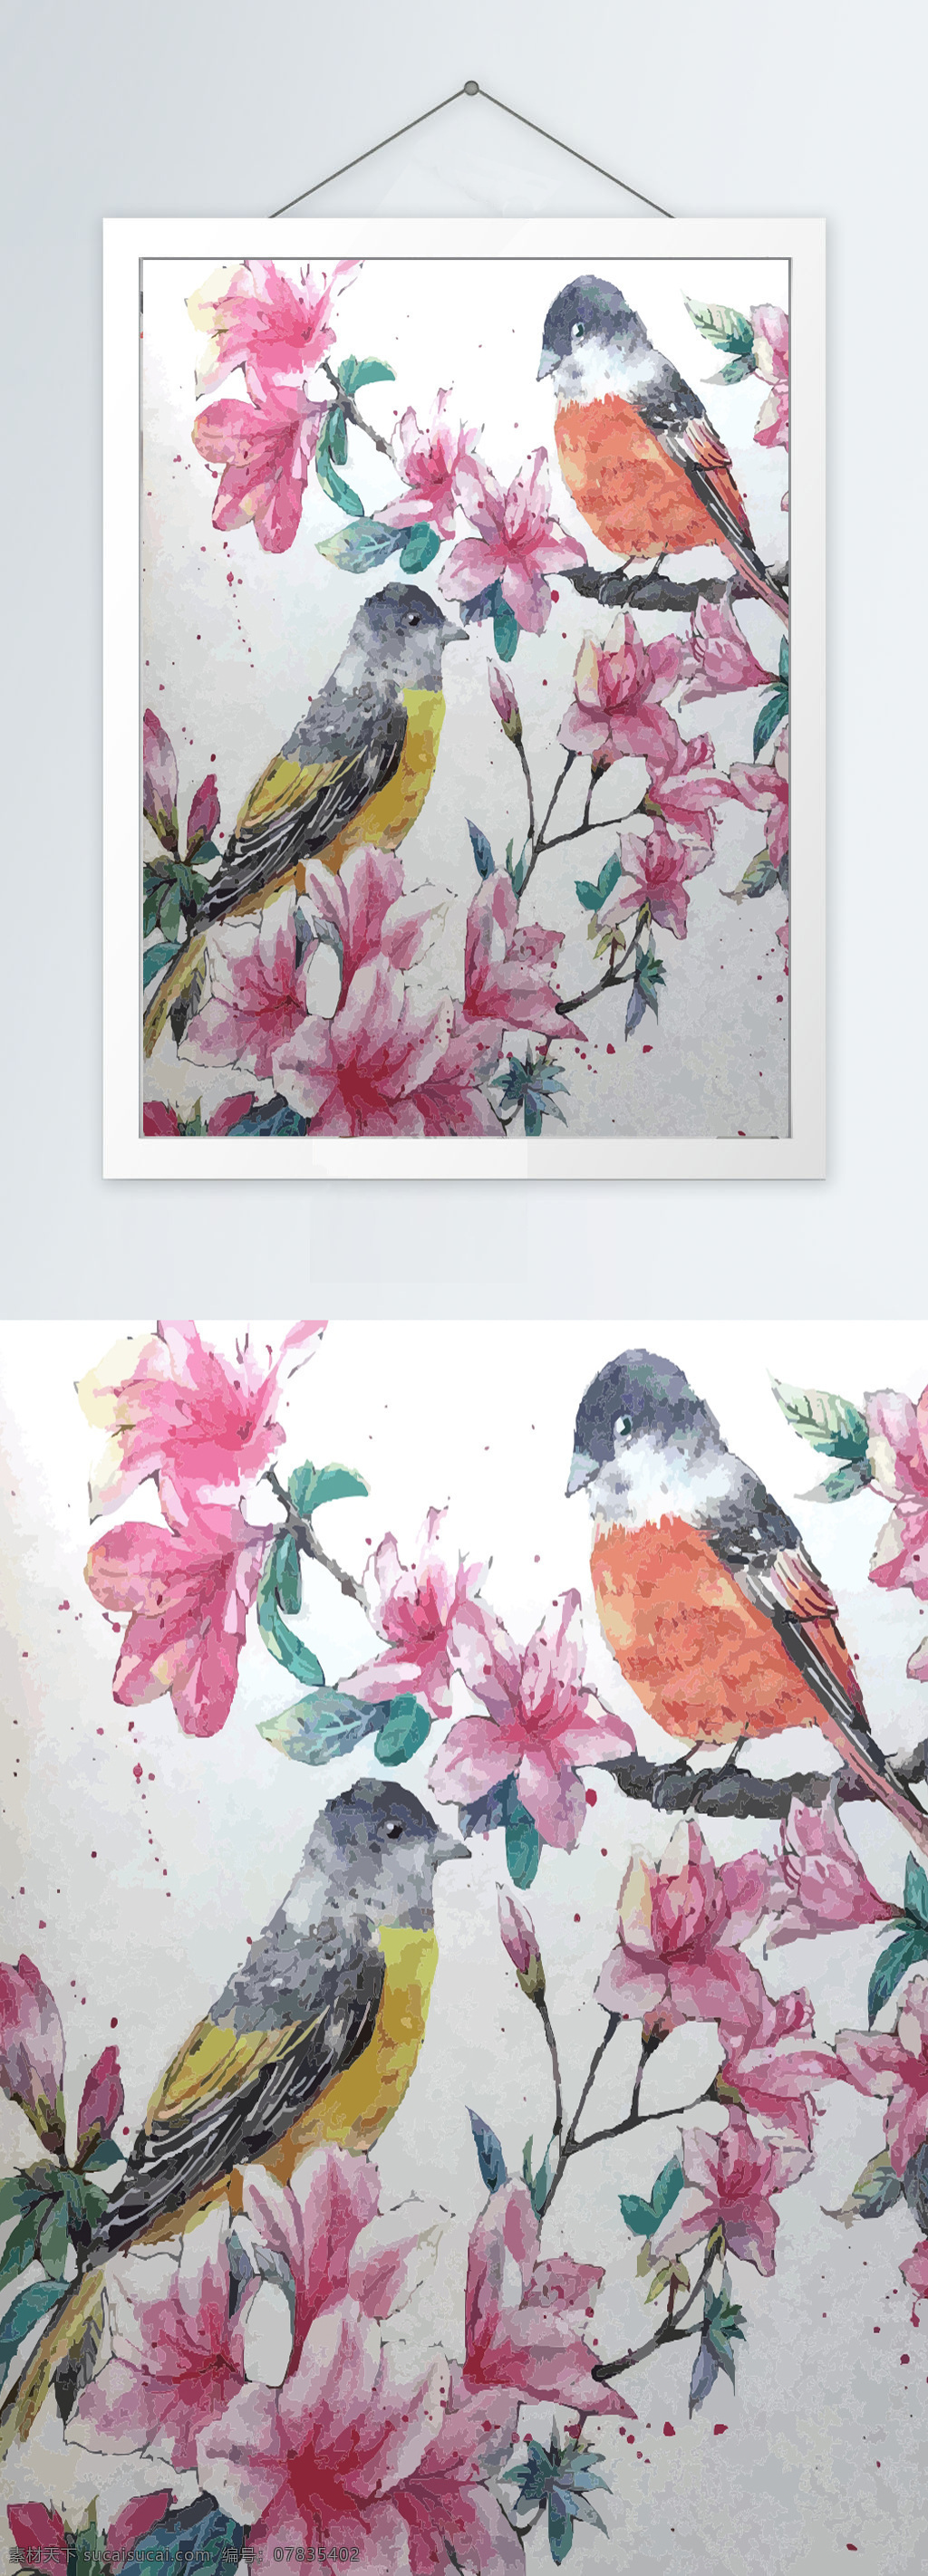 新 中式 花鸟 彩色 装饰画 中式装饰画 花鸟装饰画 彩色装饰画 中式花鸟